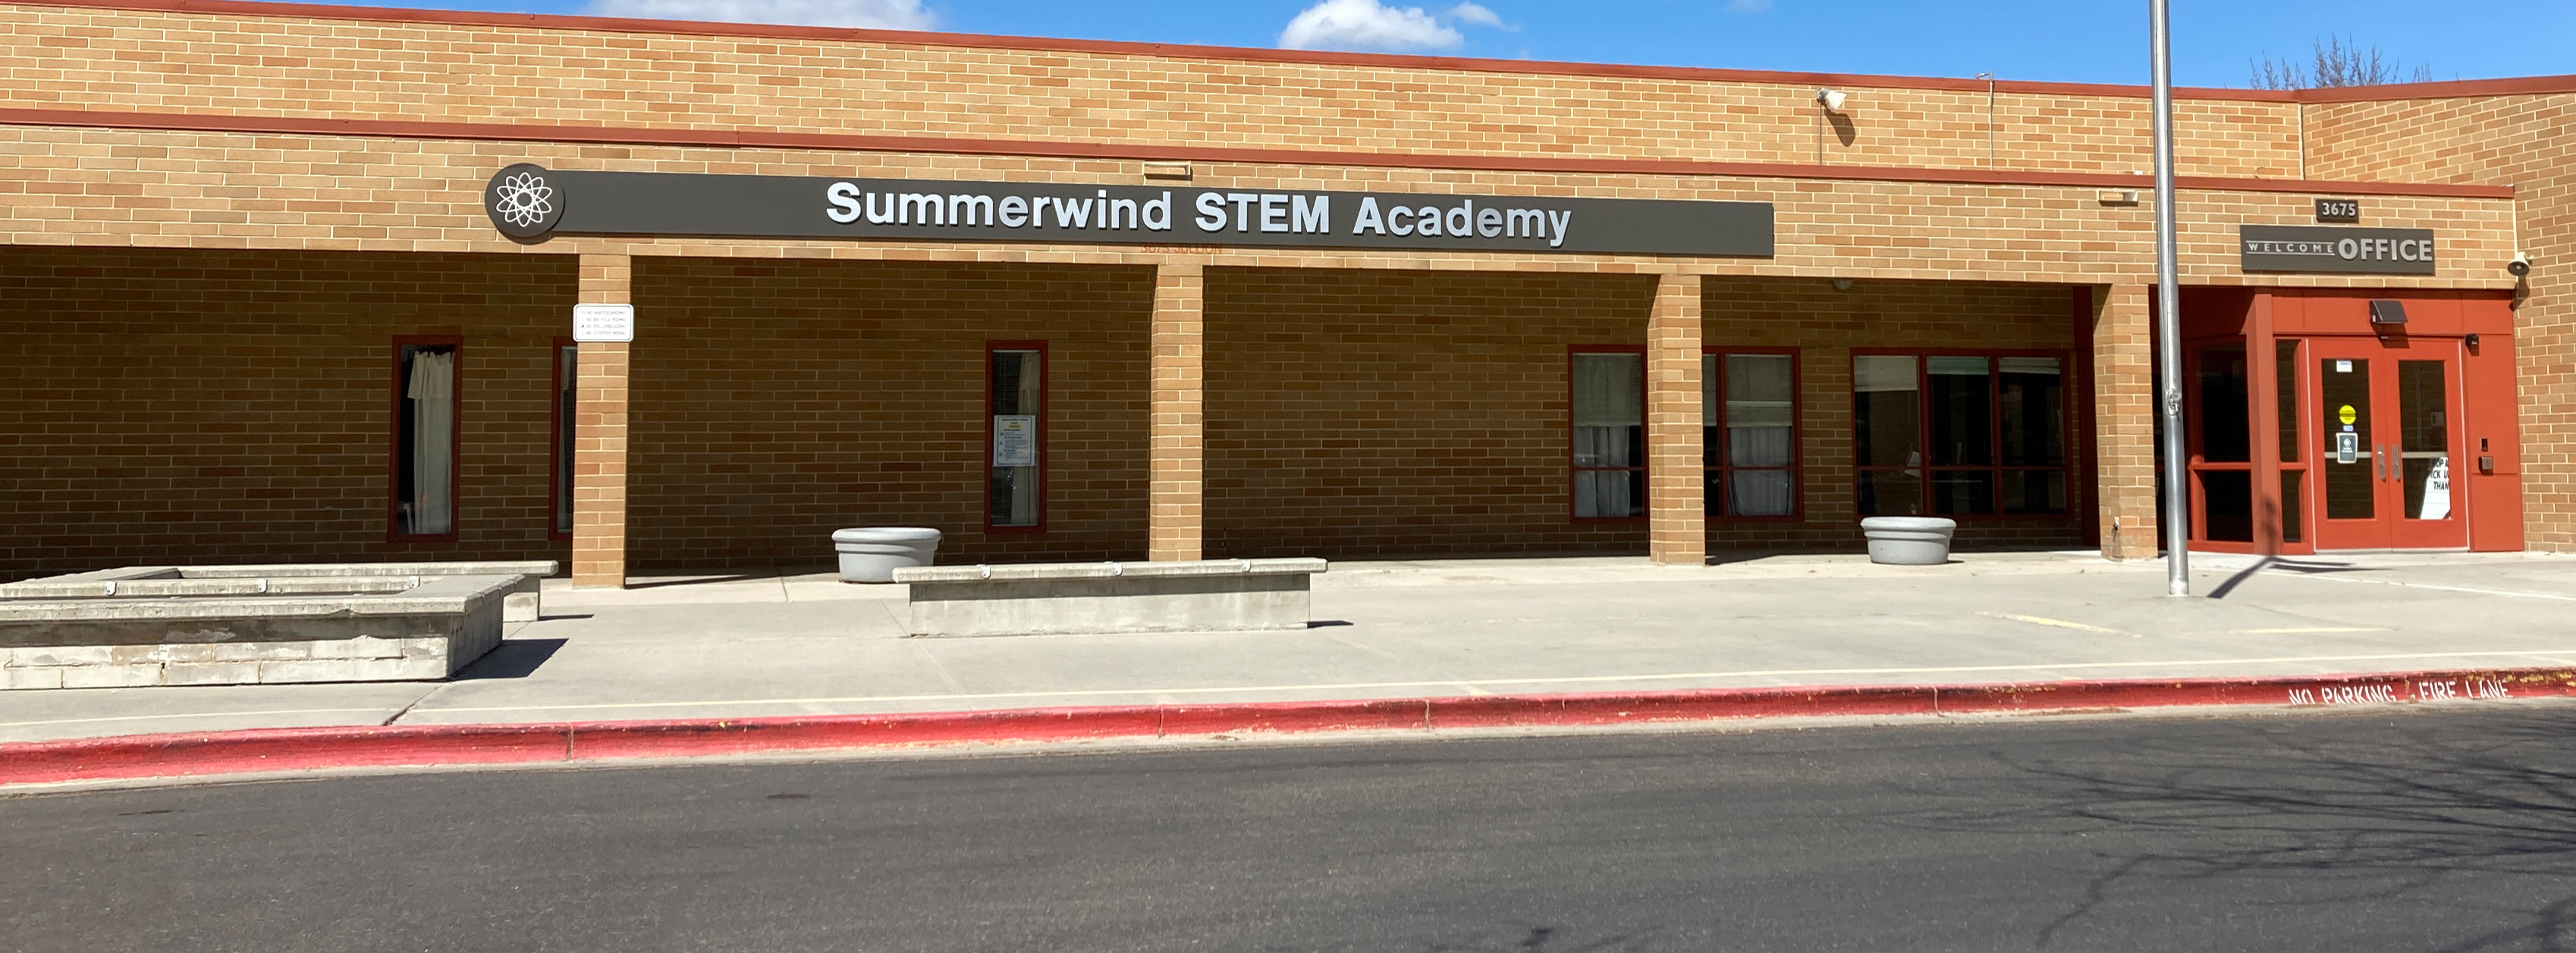 Summerwind STEM Academy